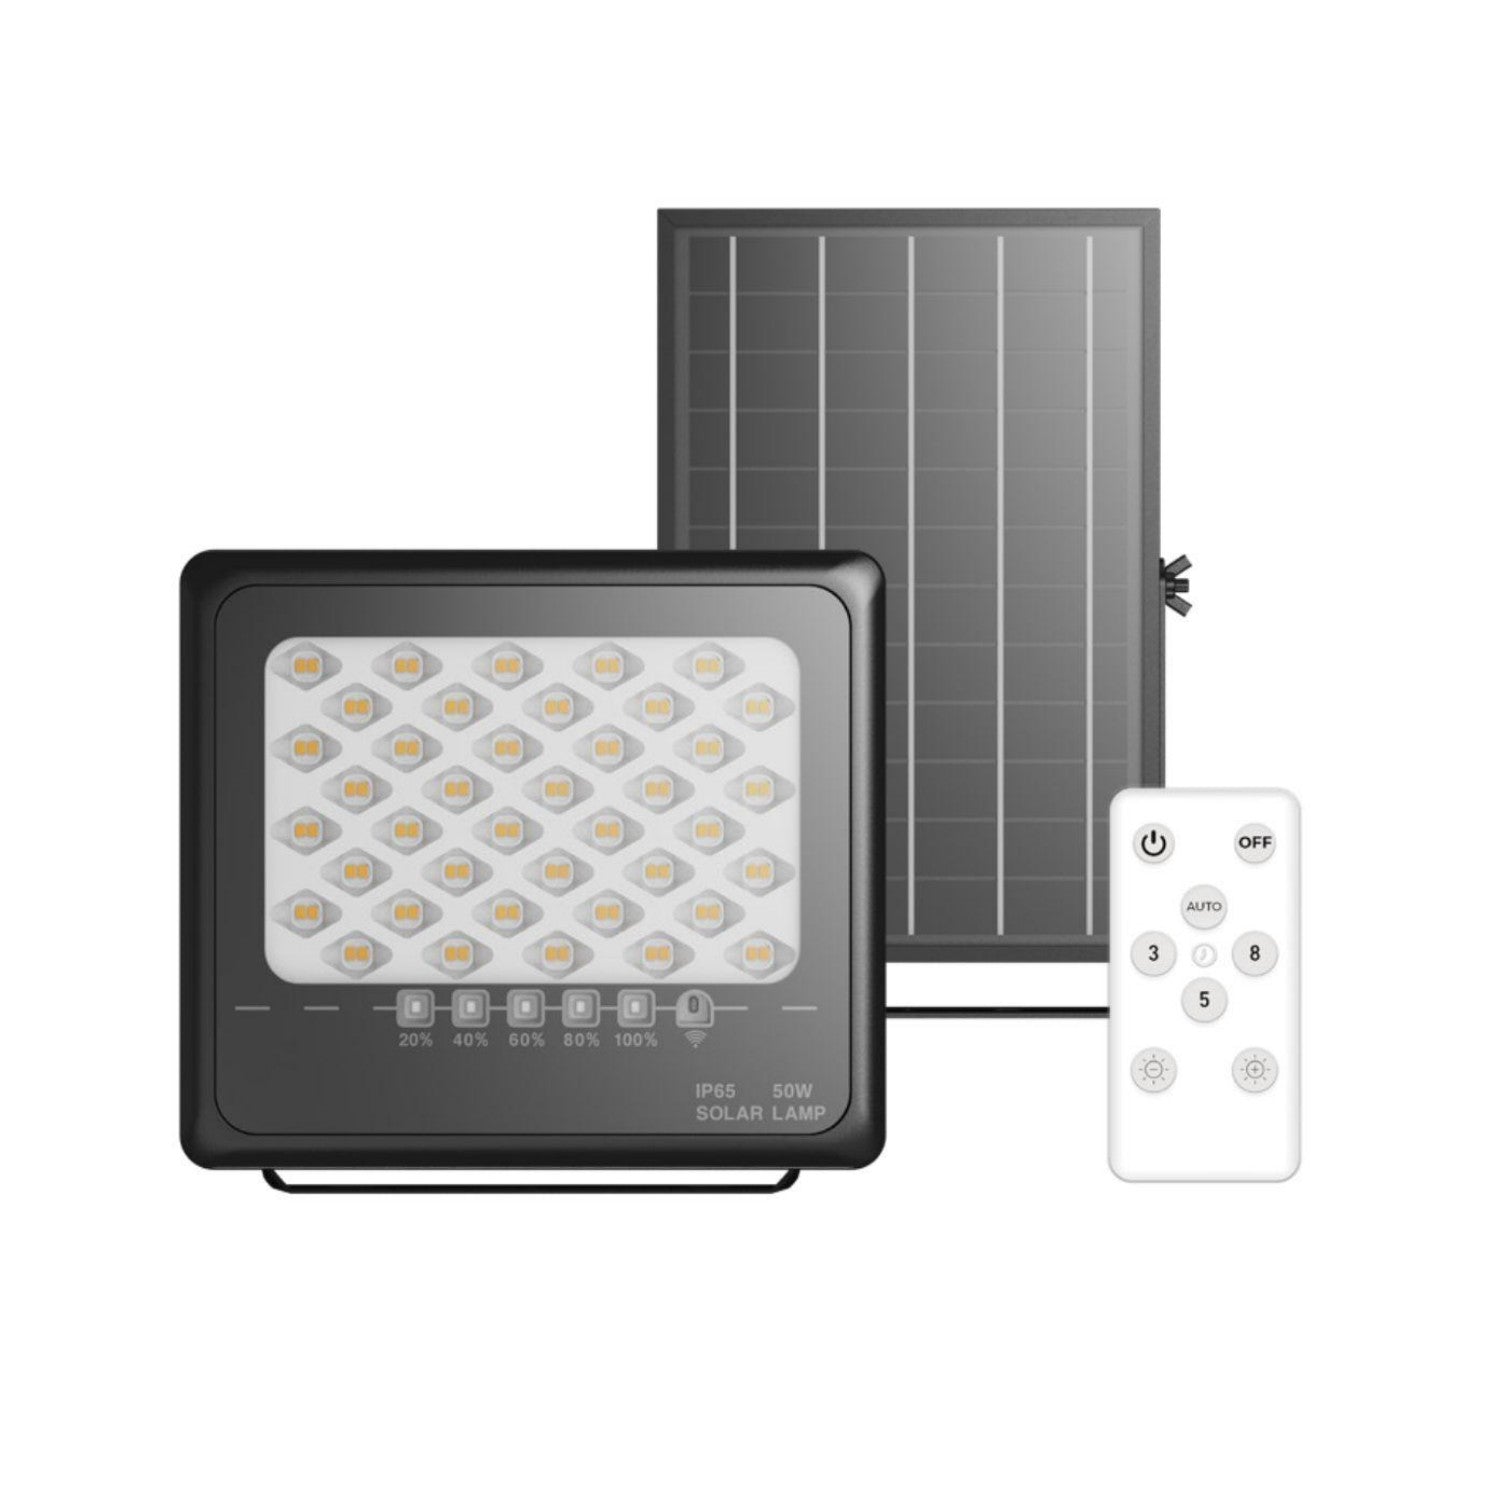 Outlux LED Solar Floodlight